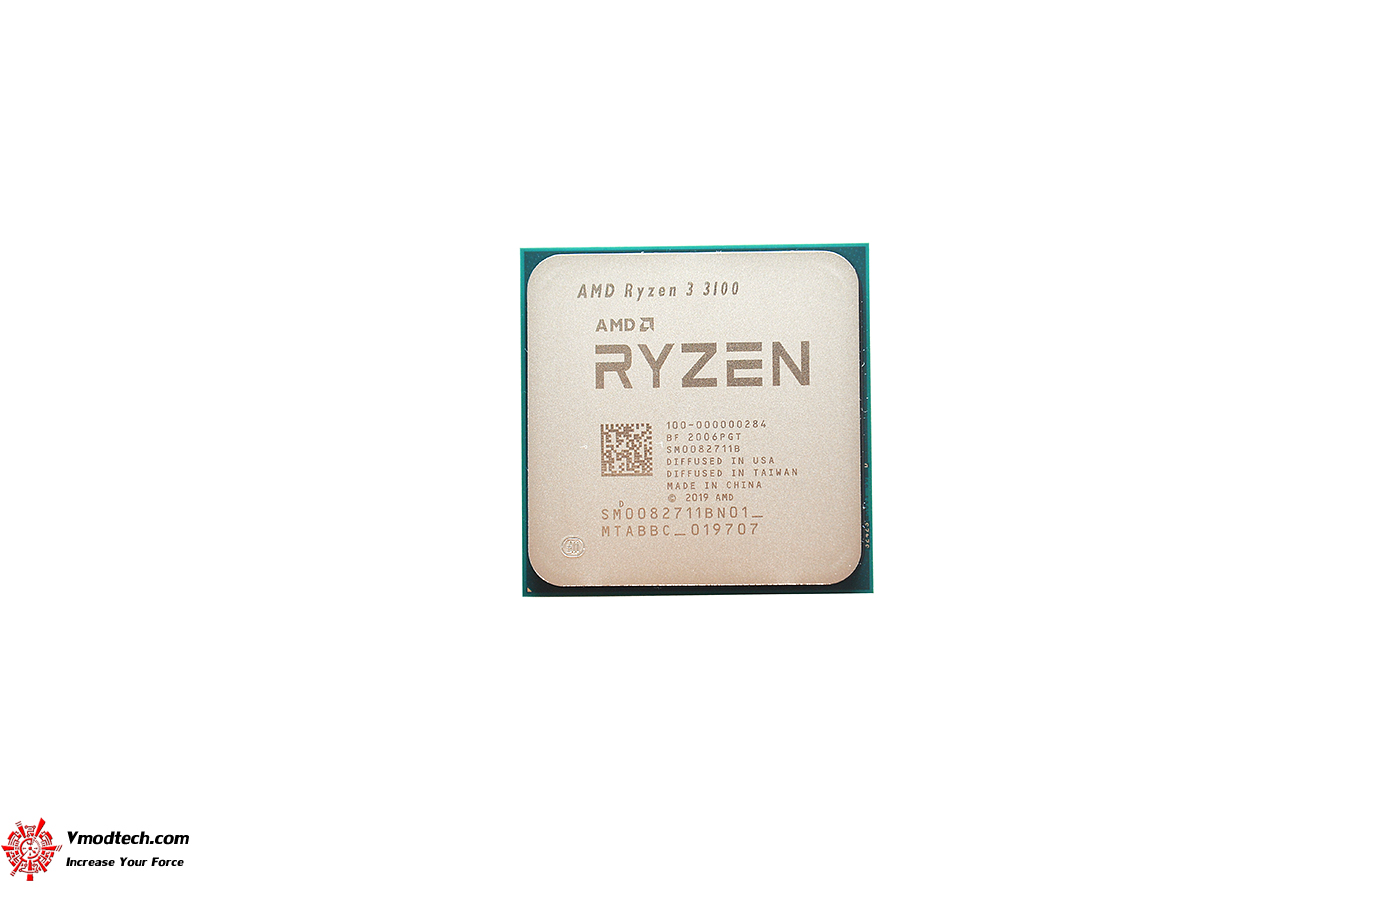 dsc 7804 AMD RYZEN 3 3100 PROCESSOR REVIEW